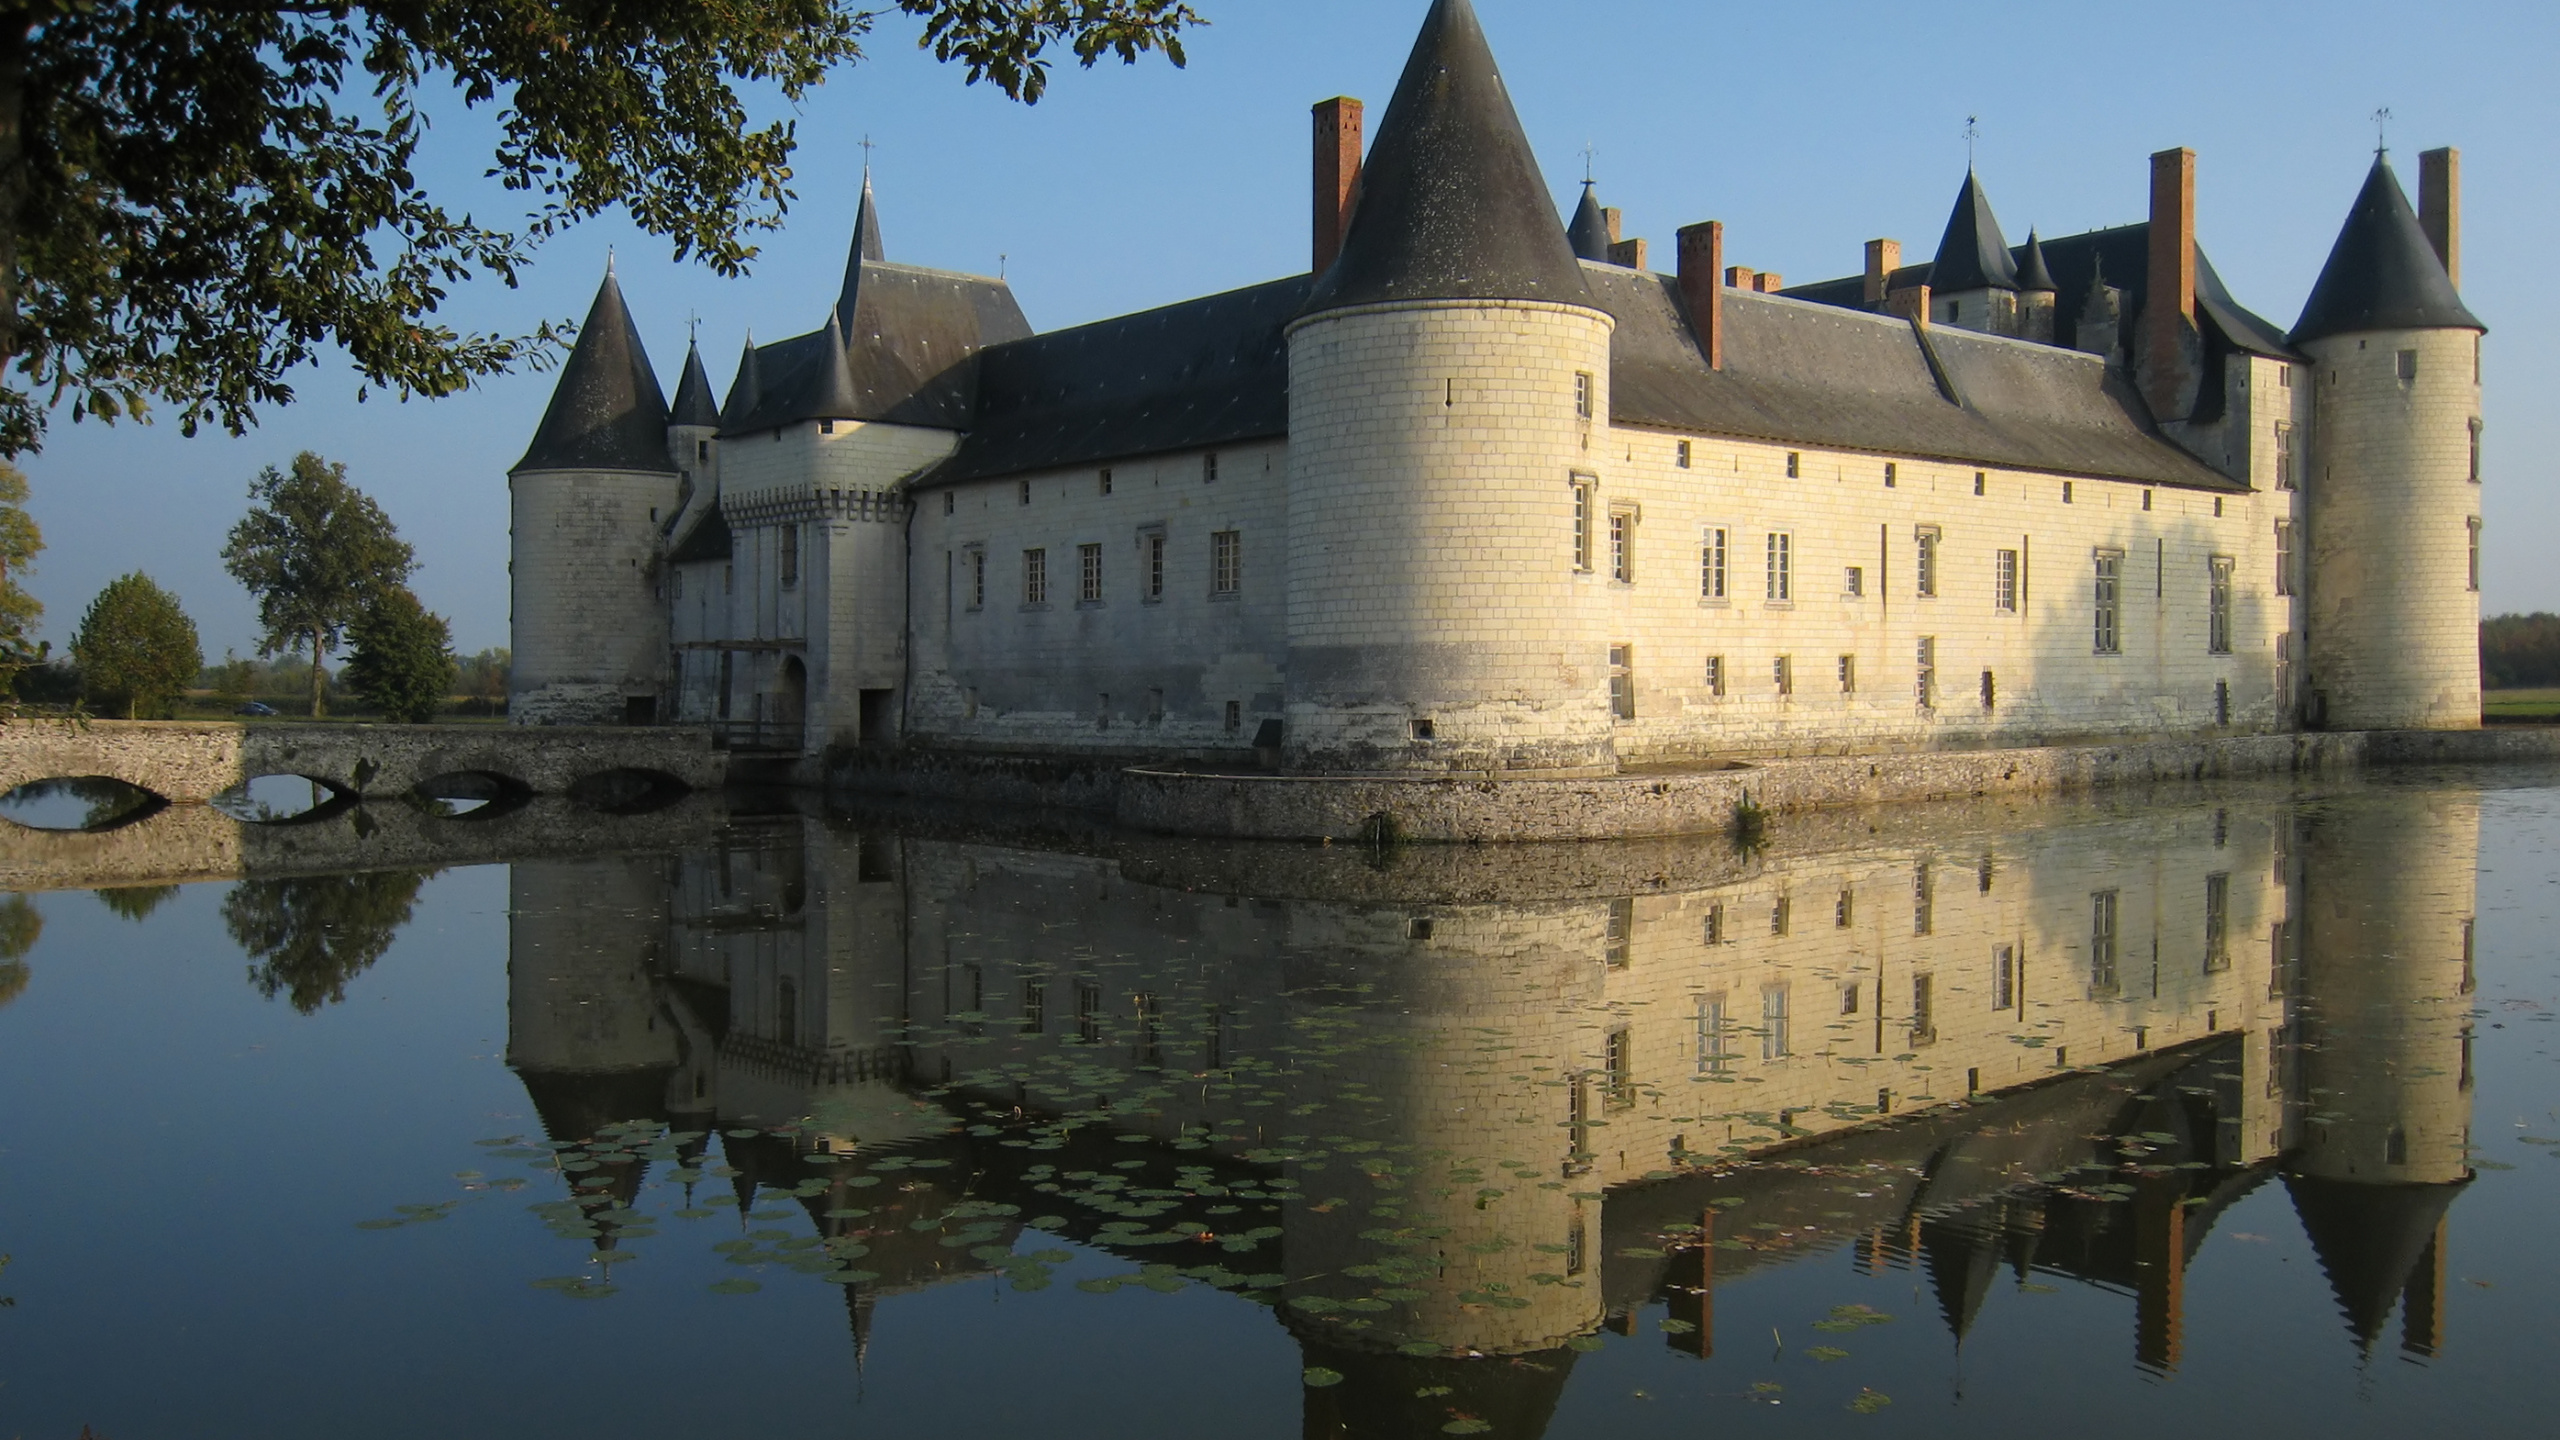 Château, Réflexion, du Château D'eau, Voie Navigable, Fossé. Wallpaper in 2560x1440 Resolution